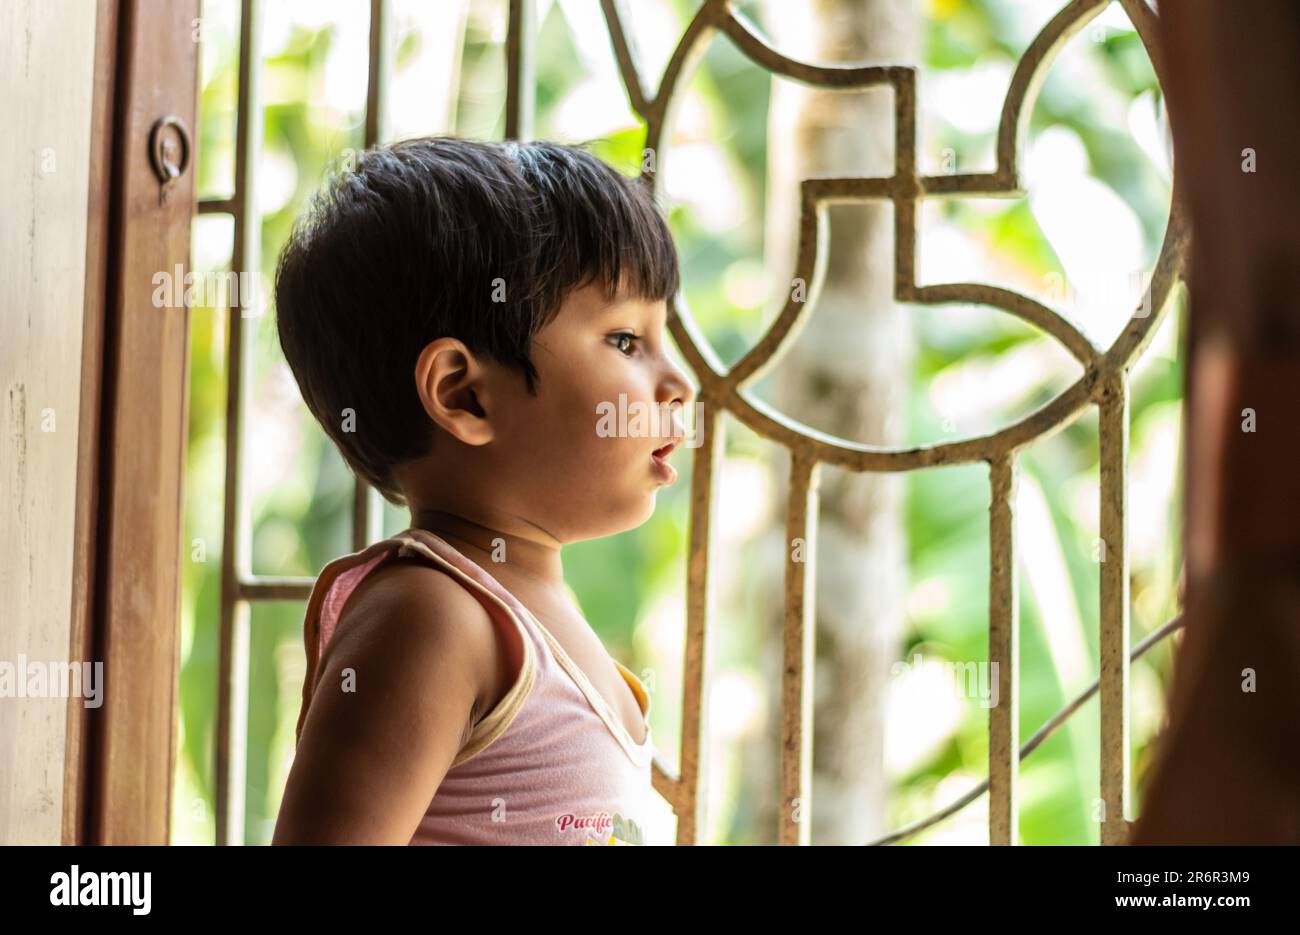 Das Baby schaut aus dem Fenster und wartet auf Mutter, die nach Hause kommt. Asiatischer Indianer, 2 Jahre alt. Stockfoto